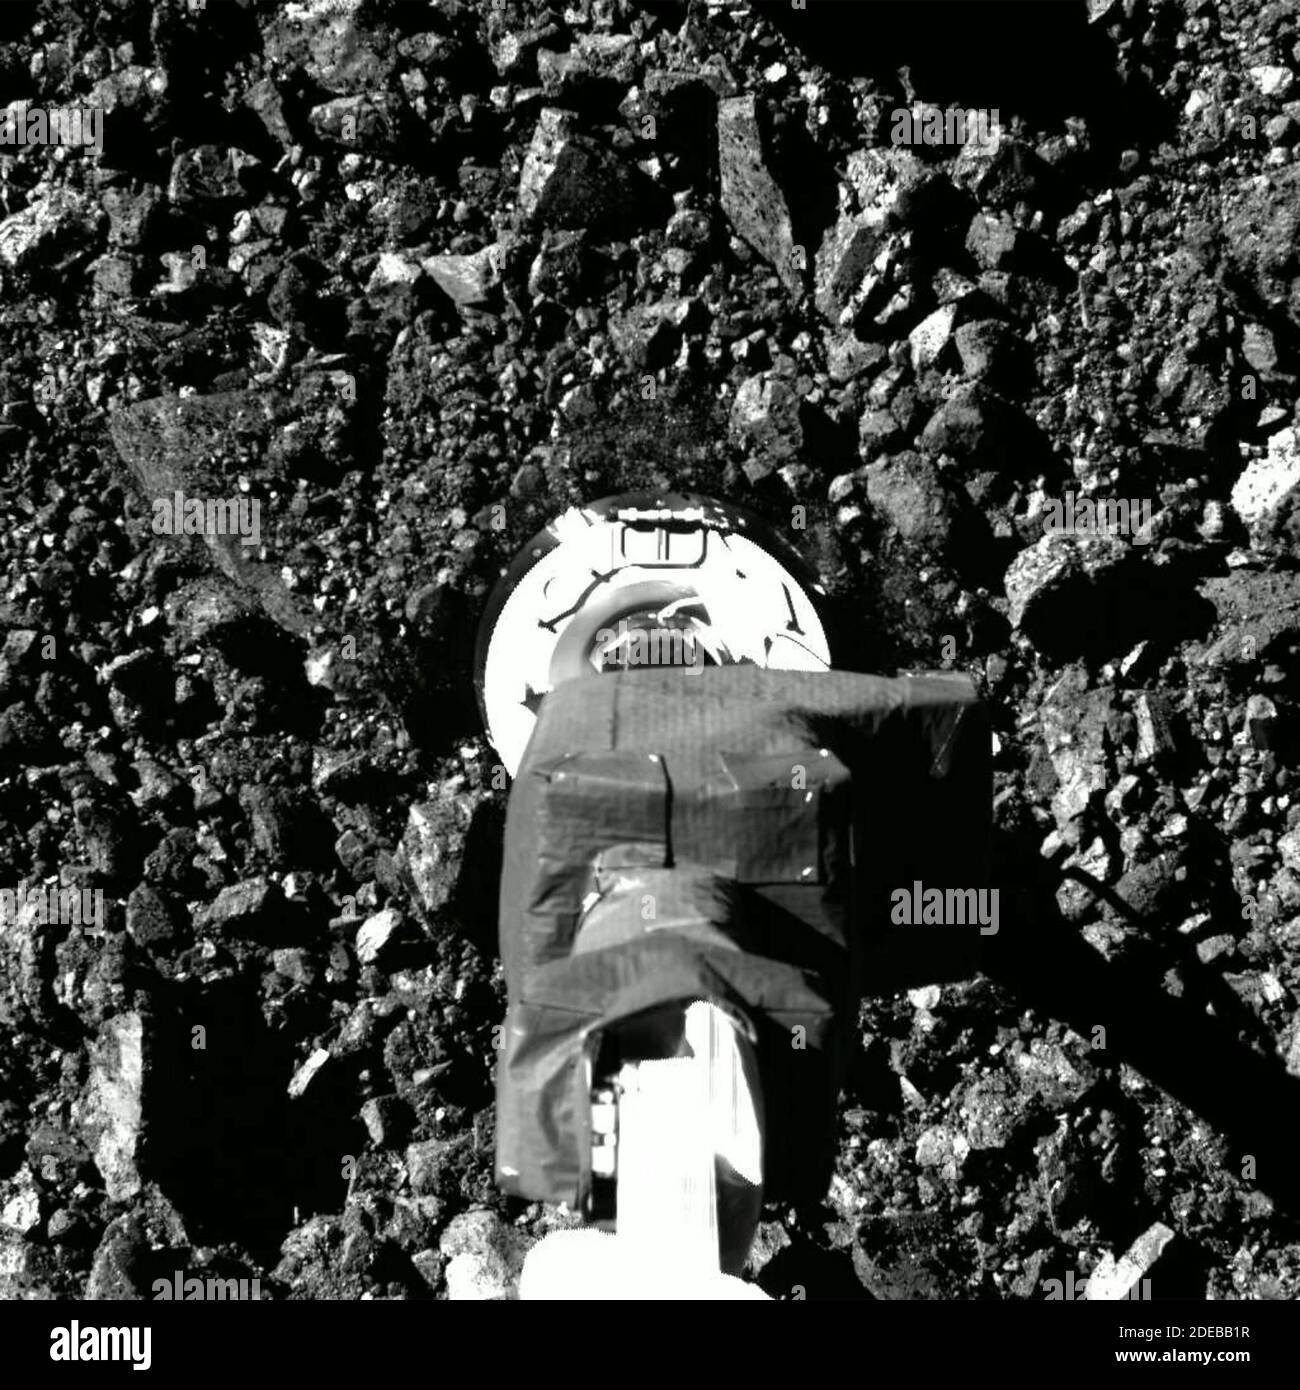 Capturée le 20 octobre 2020, lors de l'événement de collecte d'échantillons  Touch-and-Go (TAG) de la mission OSIRIS, cette série d'images montre le  champ de vision de l'imageur SamCam à mesure que le